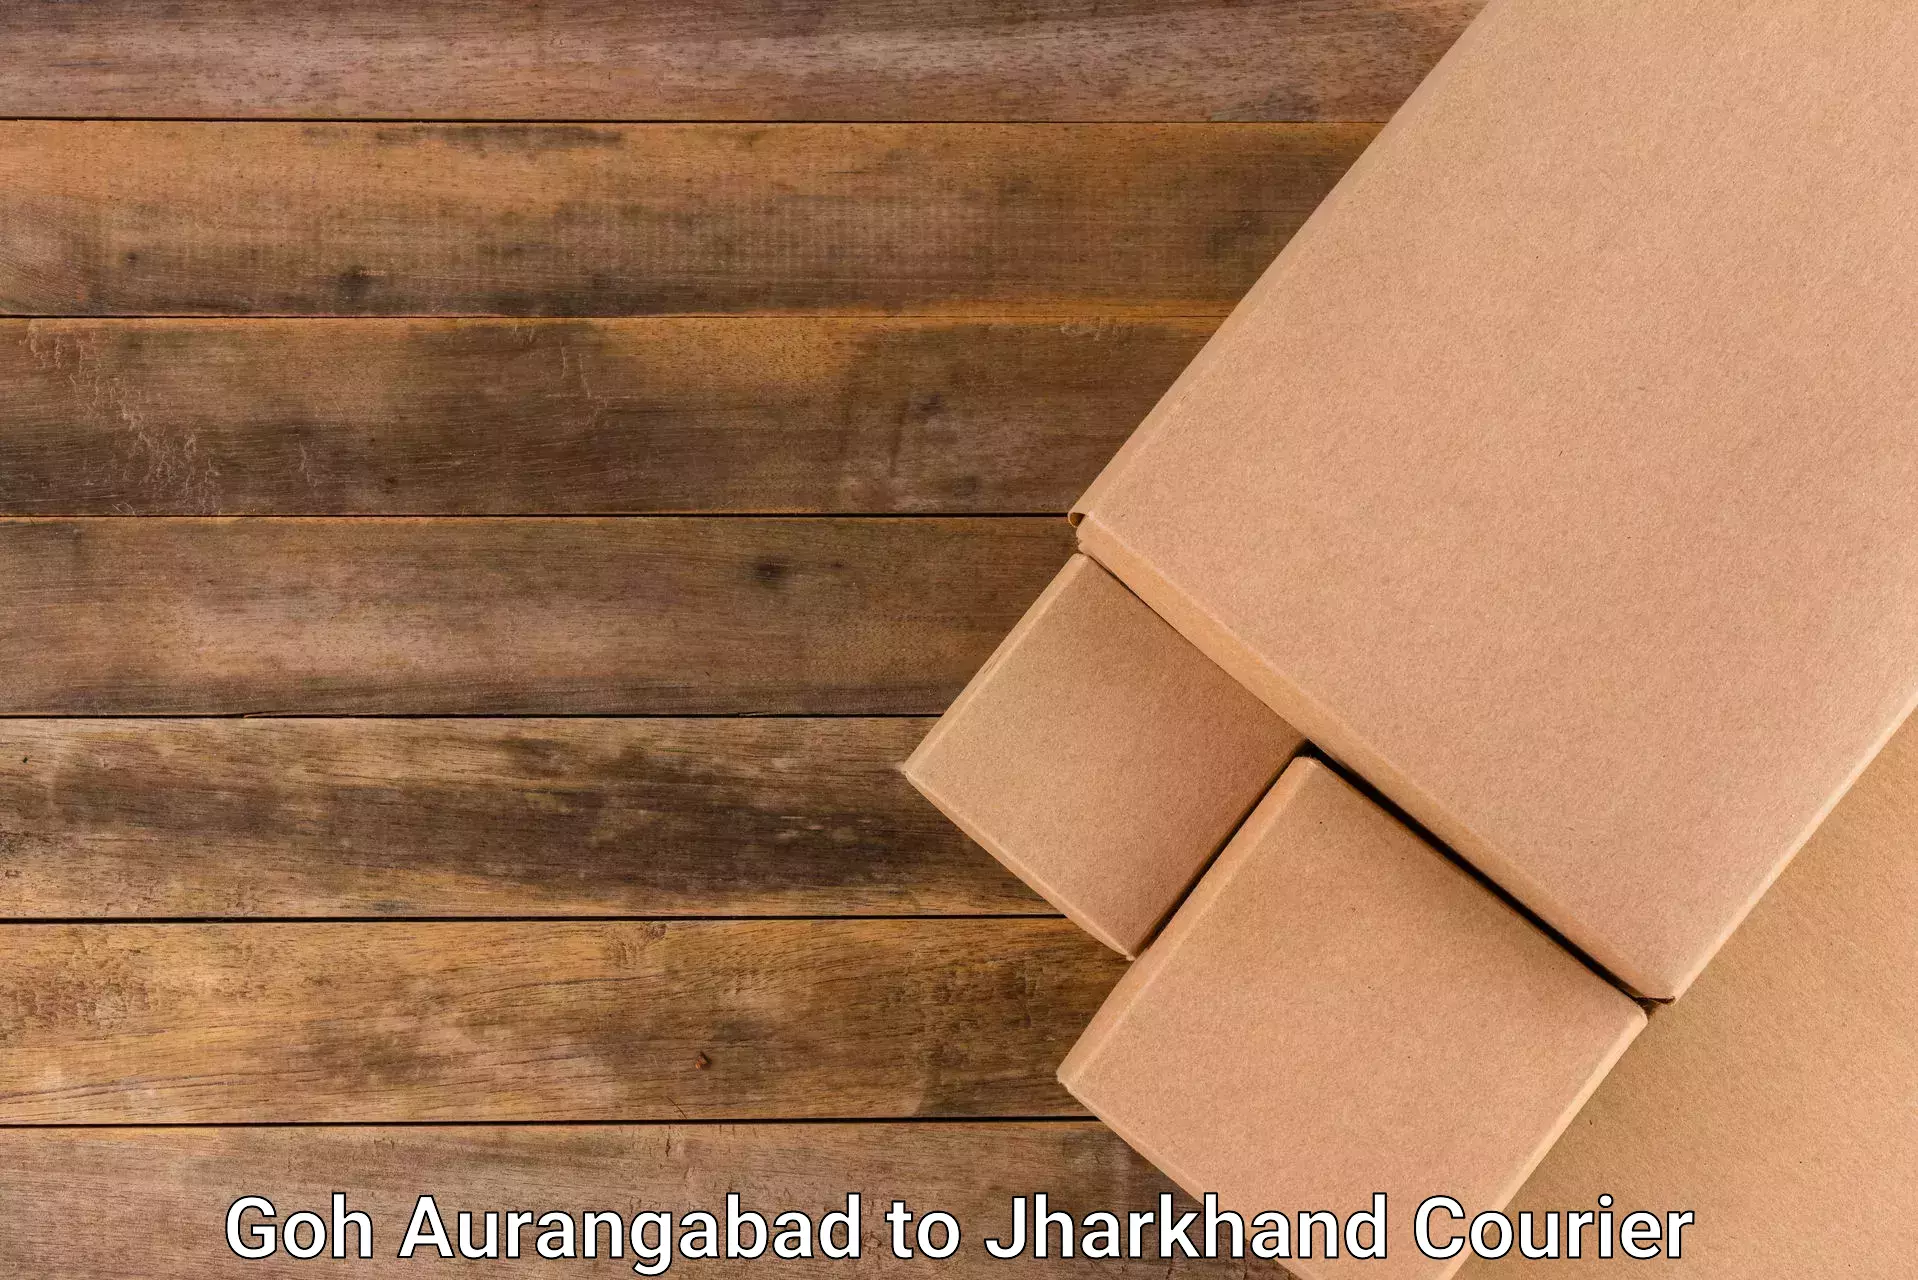 High-capacity parcel service Goh Aurangabad to Sahibganj